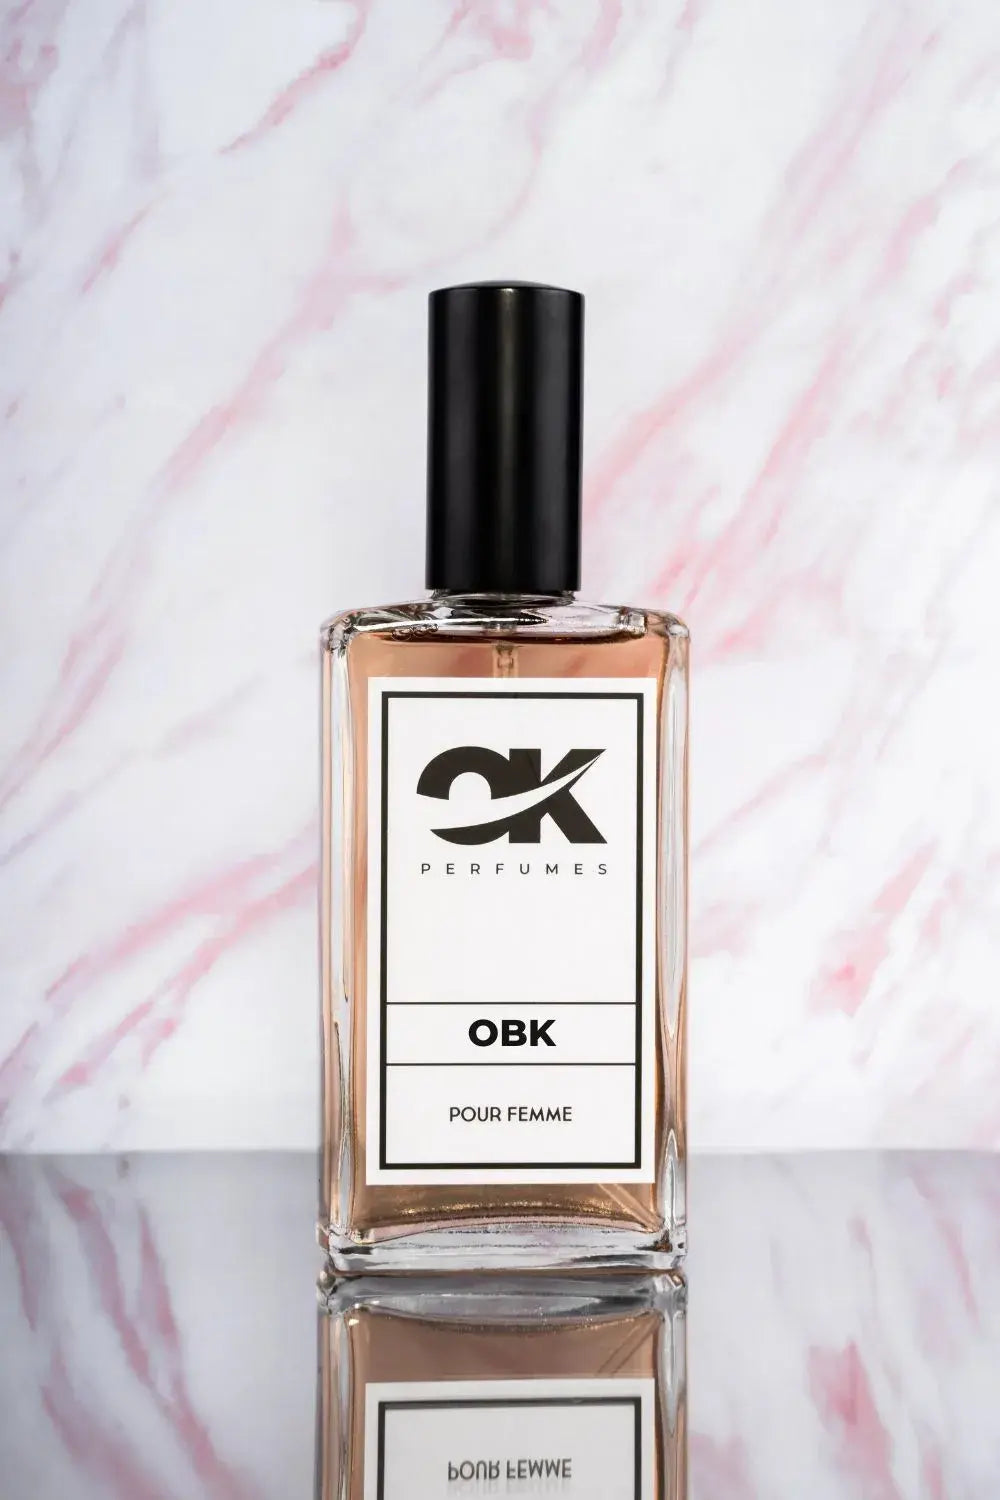 OBK - Recuerda a Black Opium de YSL